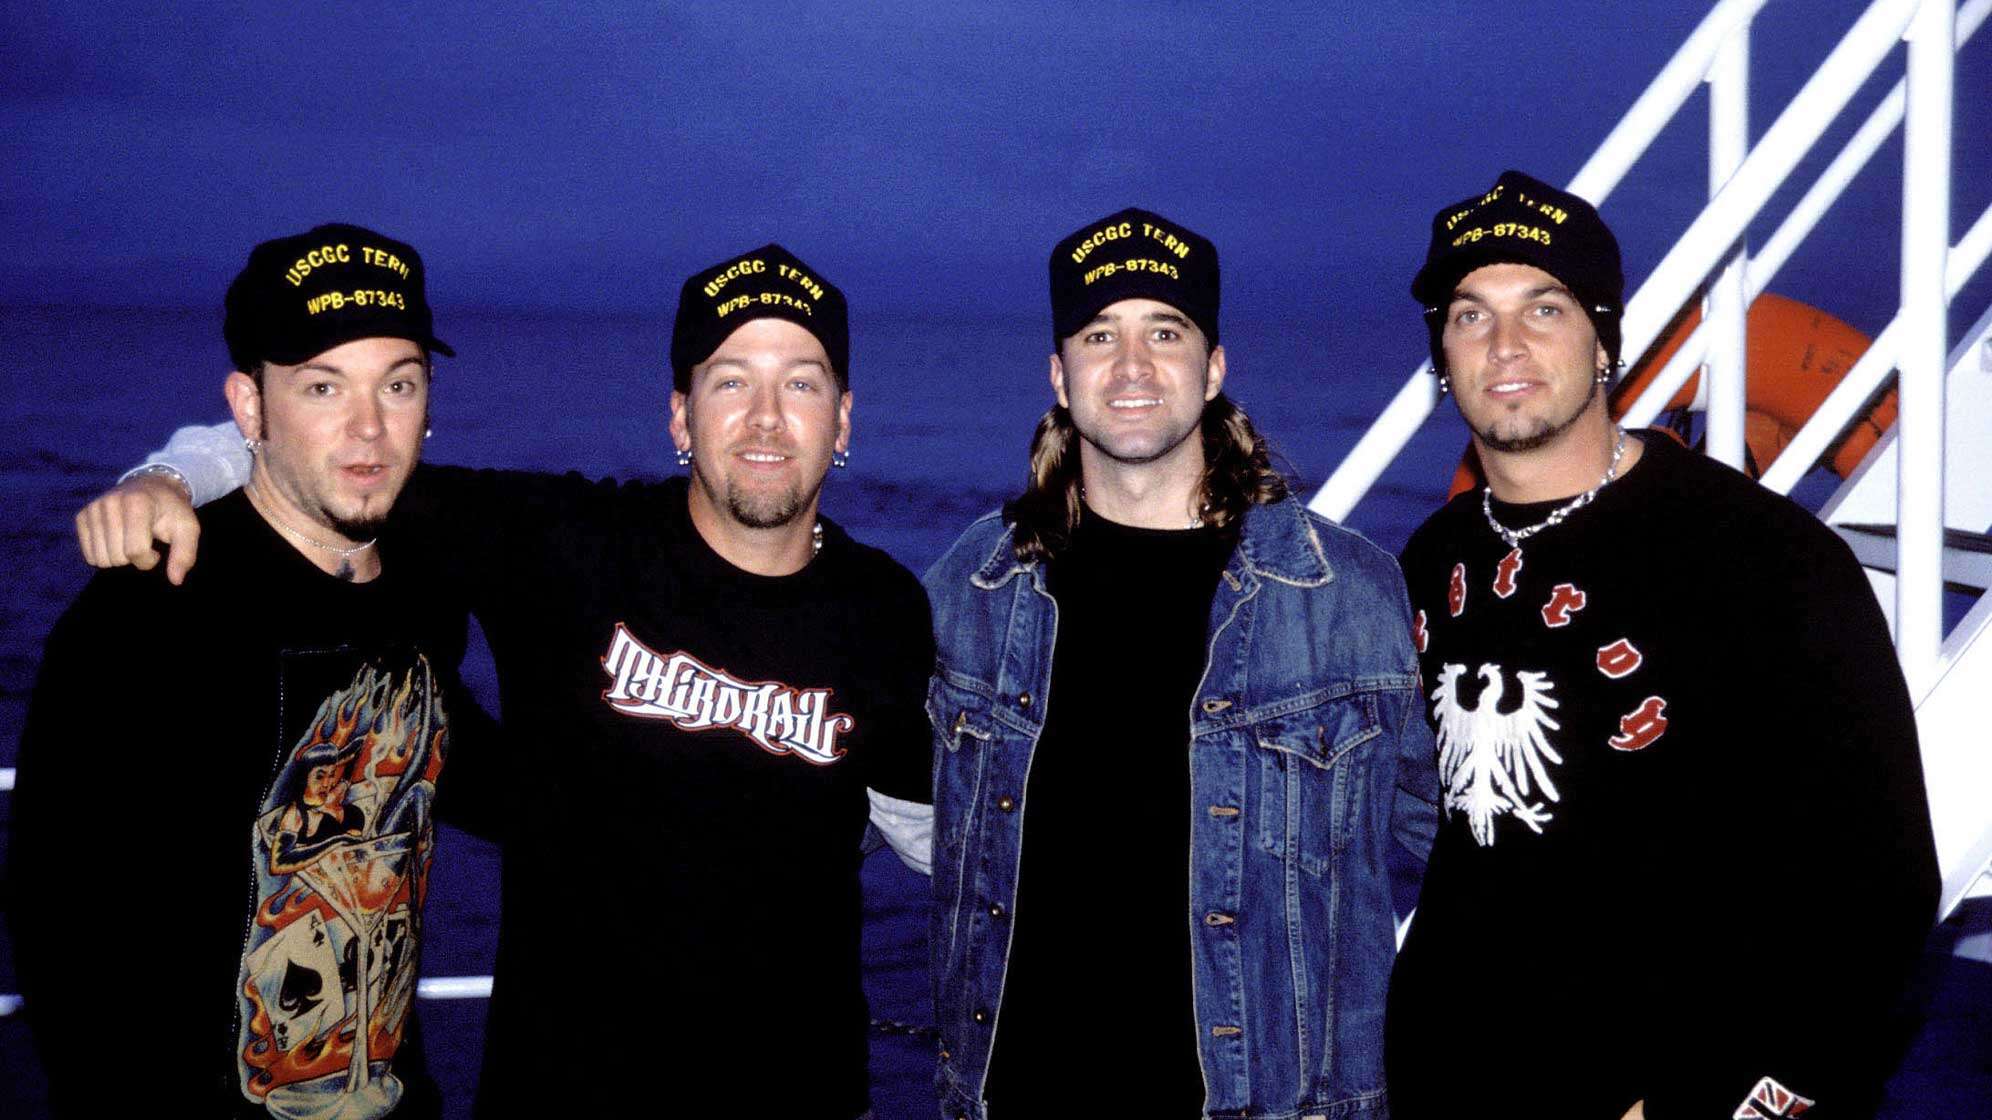 Die Bandmitglieder von Creed, Scott Stapp, Mark Tremonti, Brian Marshall und Scott Phillips im Jahr 2002